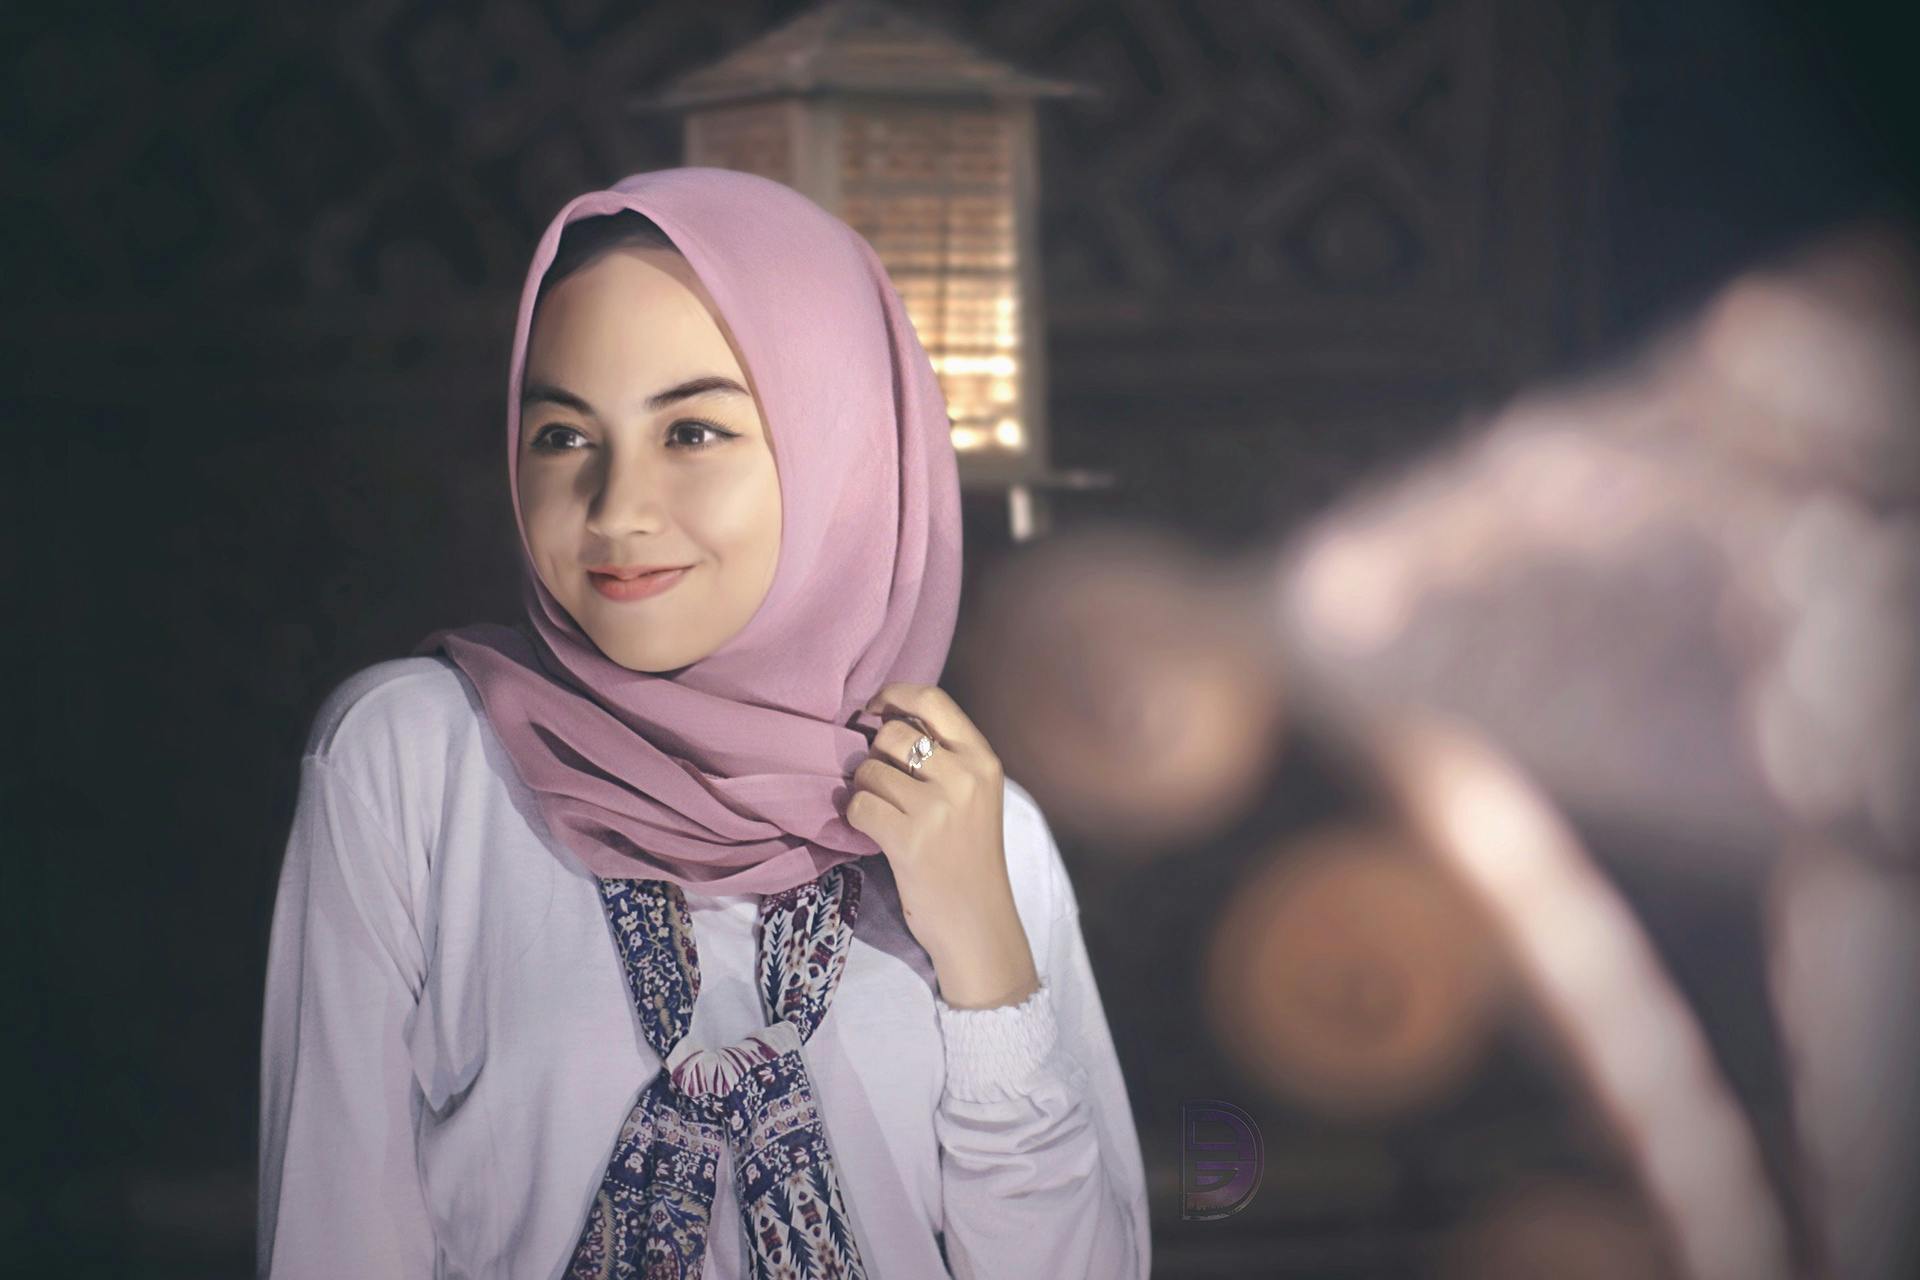 100 Beautiful Hijab Photos Pexels Free Stock Photos